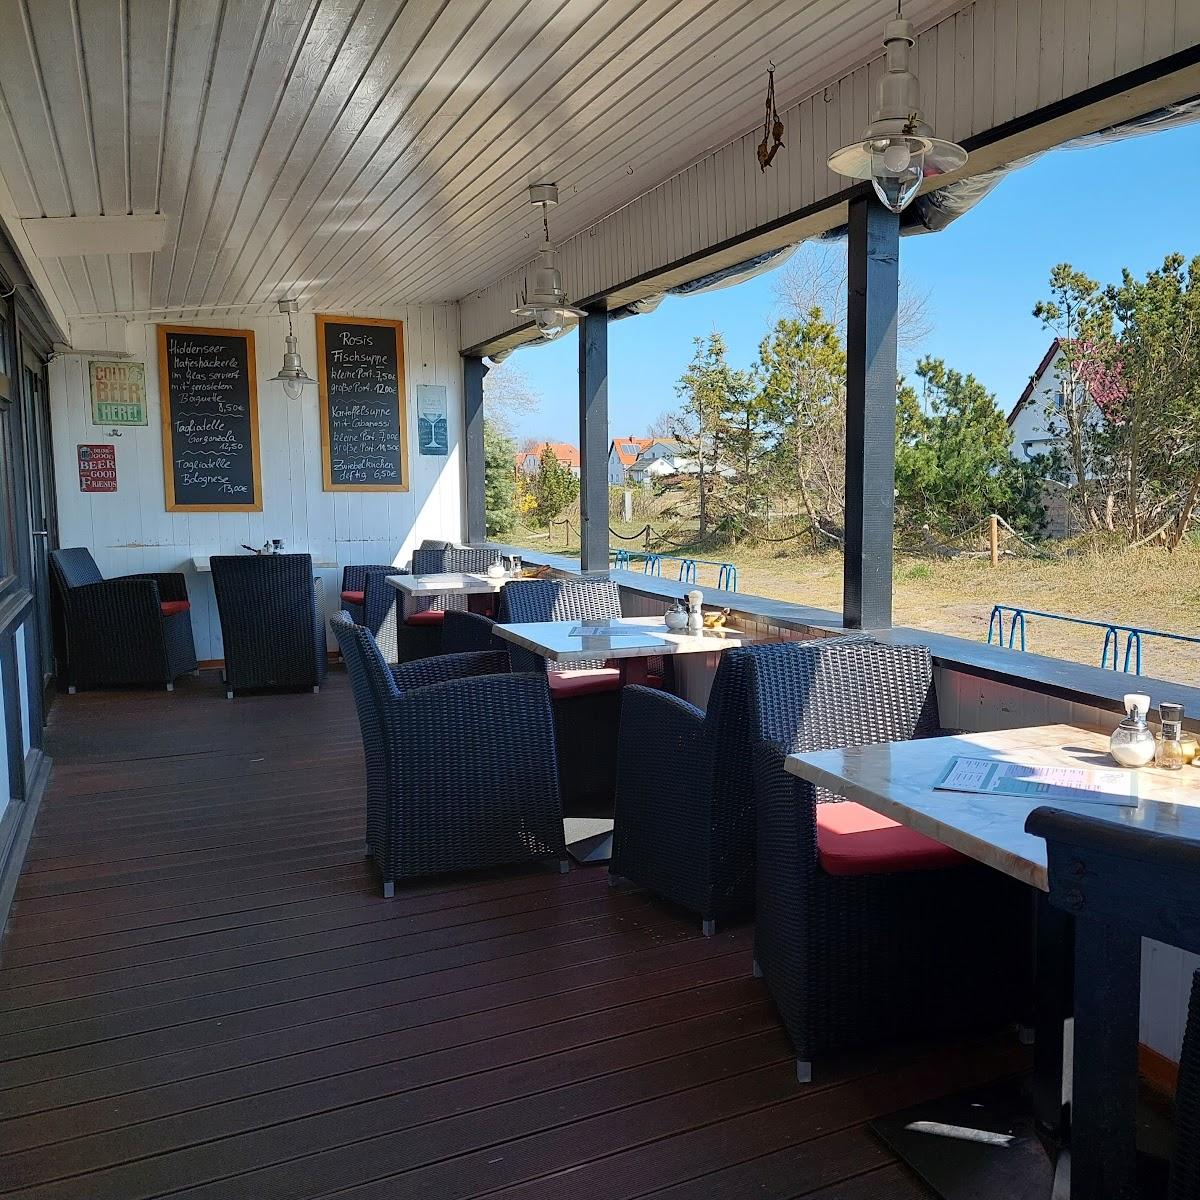 Restaurant "Cafe und Bistro Rosi" in Insel Hiddensee